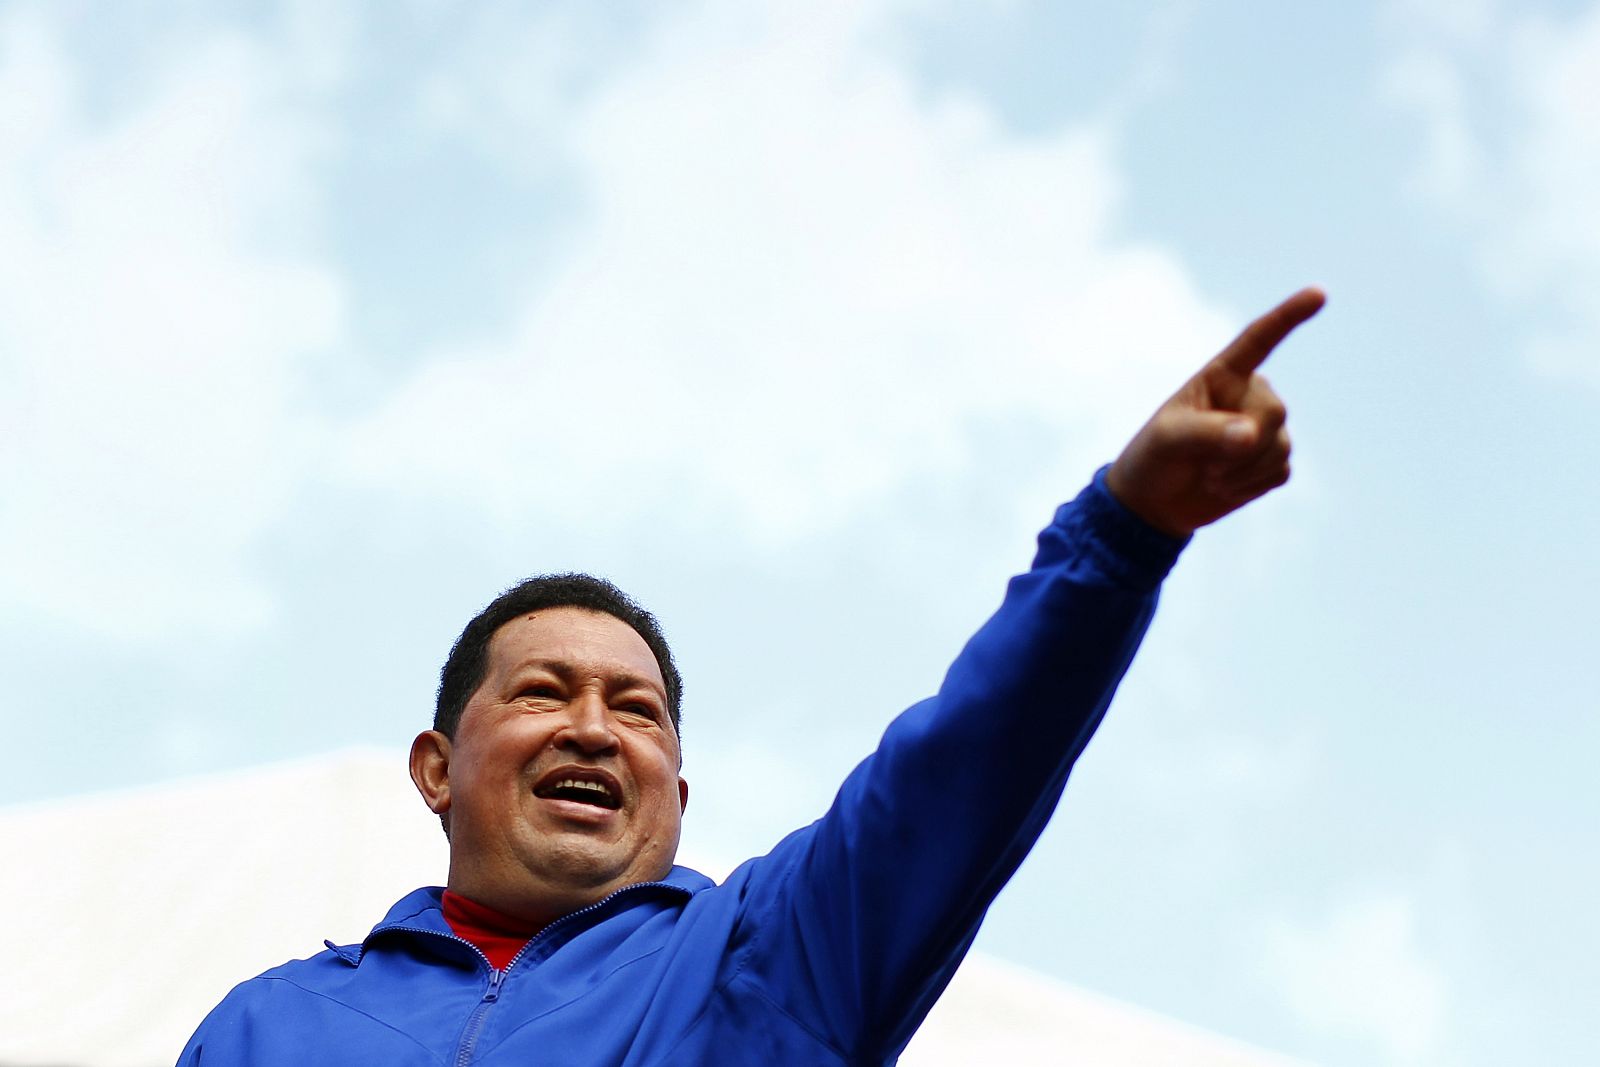 El presidente de Venezuela, Hugo Chávez, defiende ante sus seguidores el "Socialismo del siglo XXI".